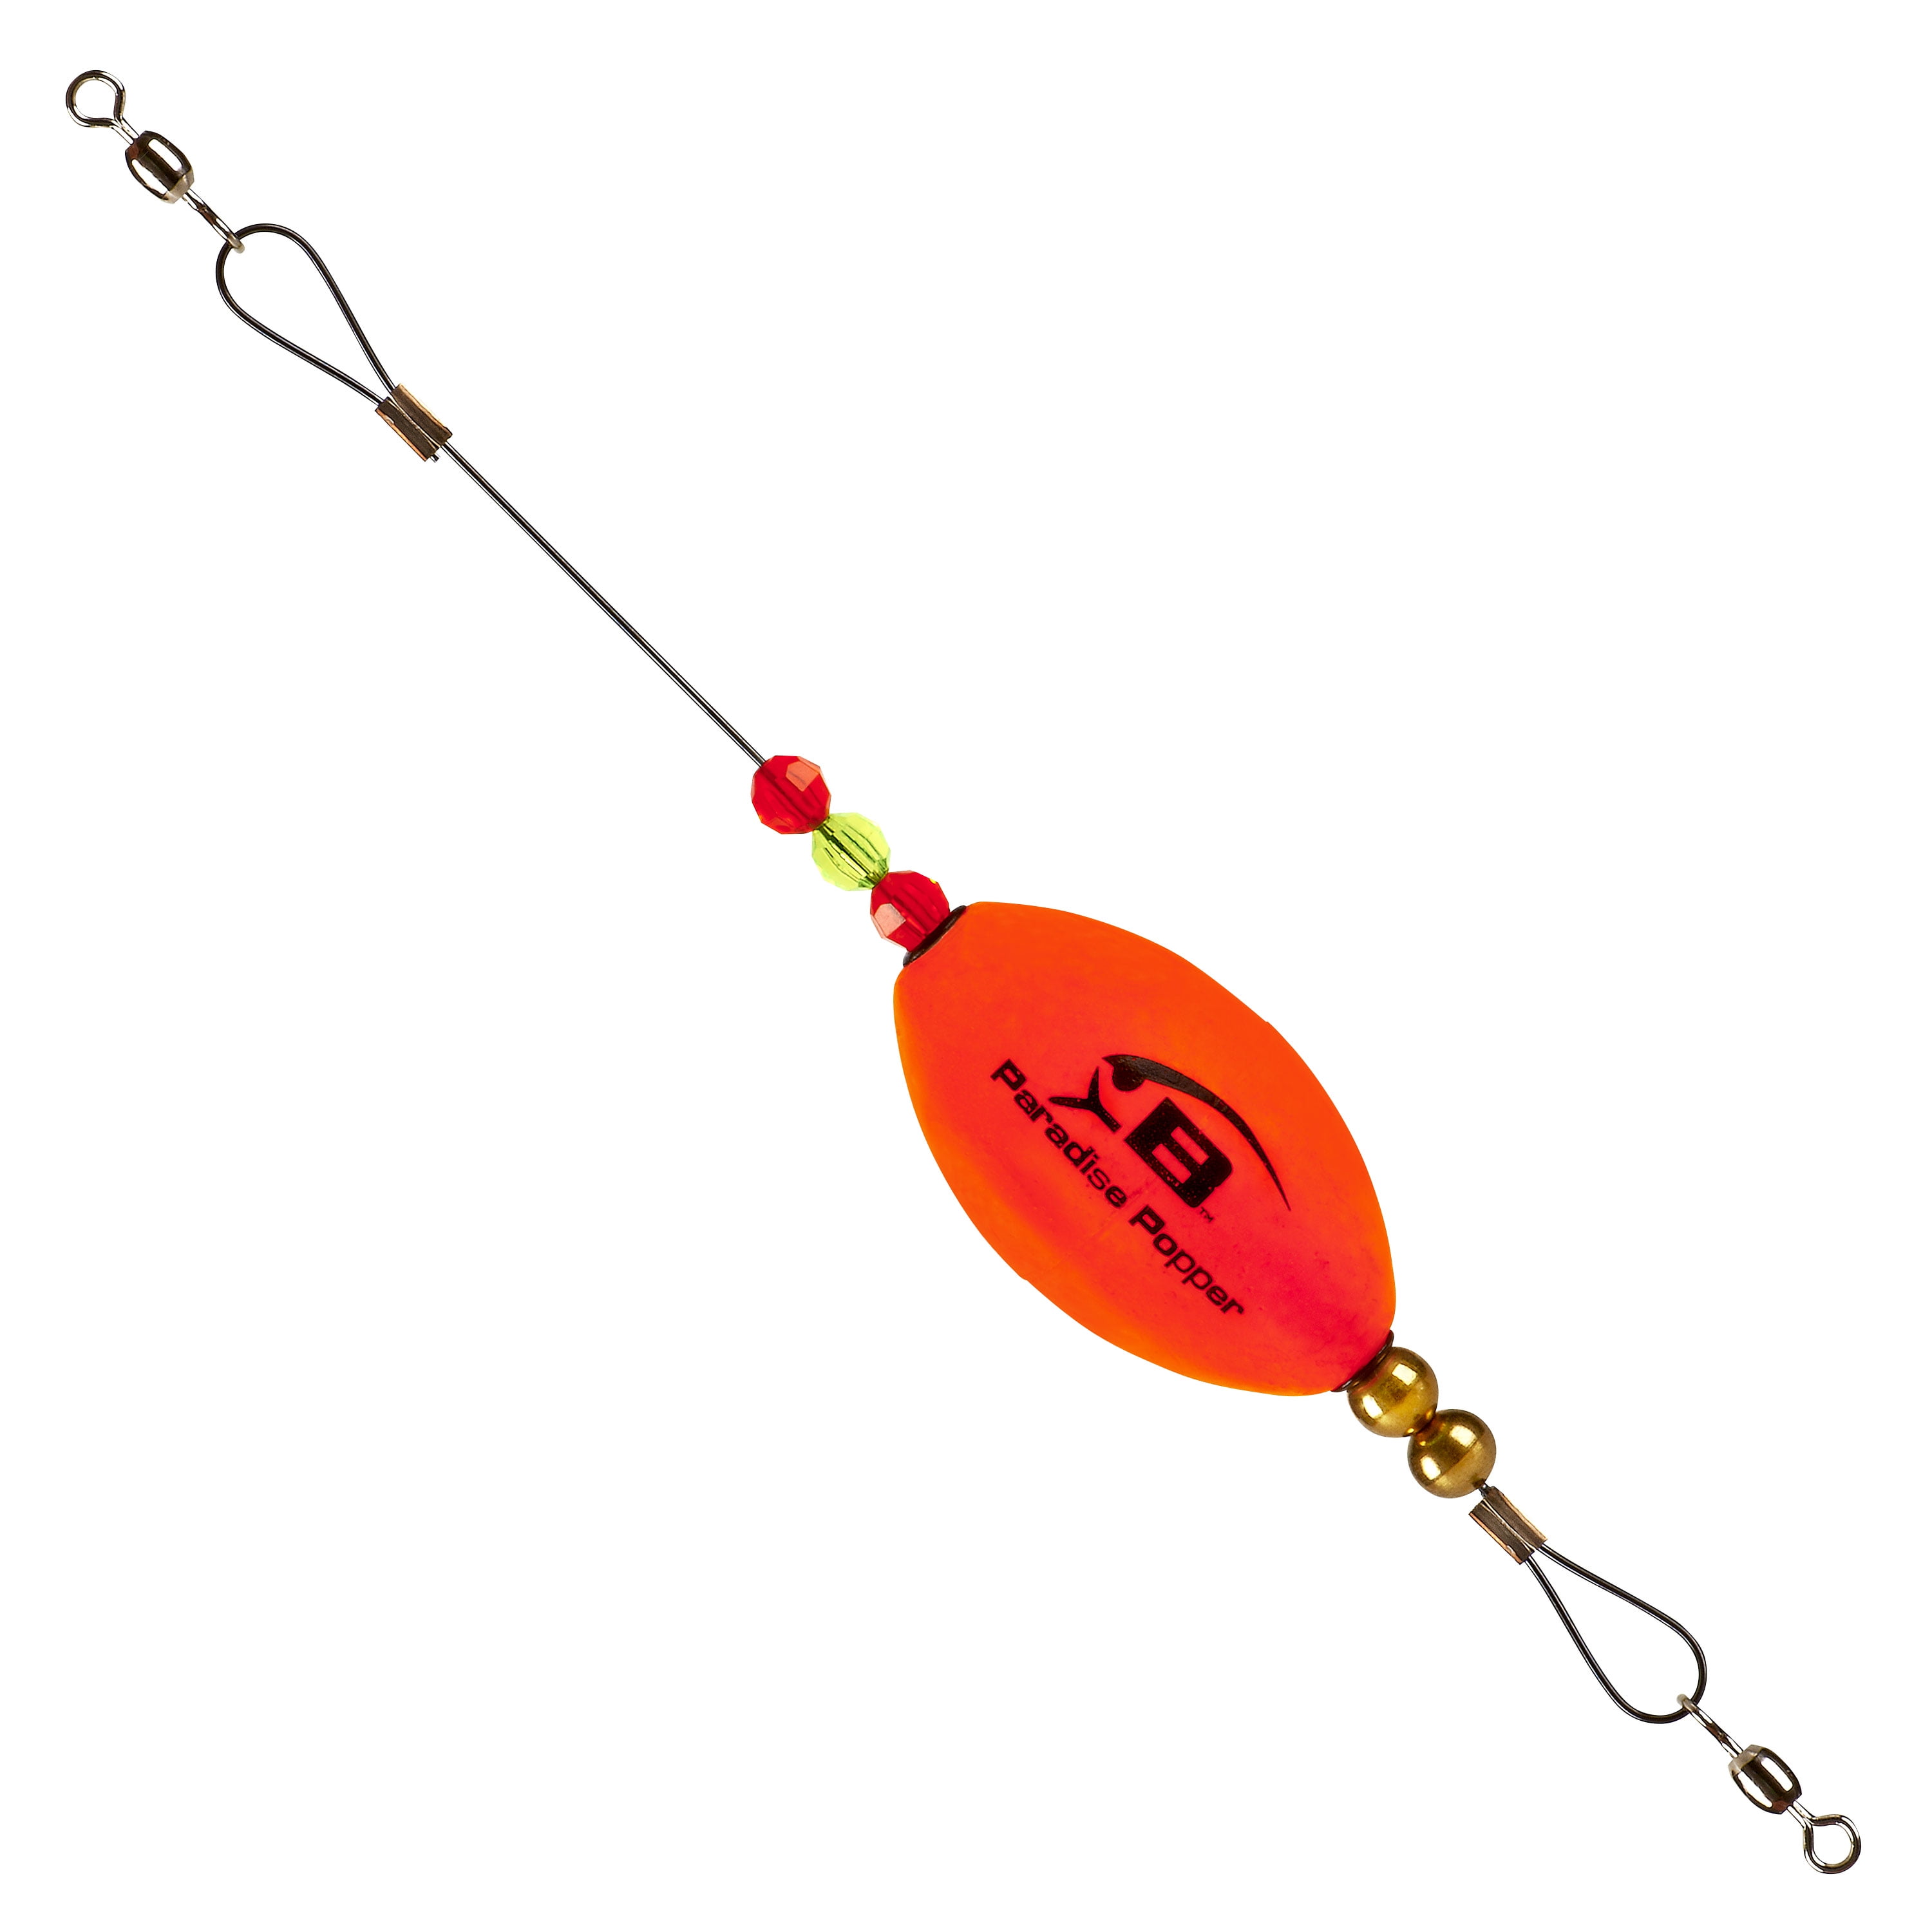 Bomber Paradise Popper X-Treme Fishing Float Rig Orange 5/8 oz